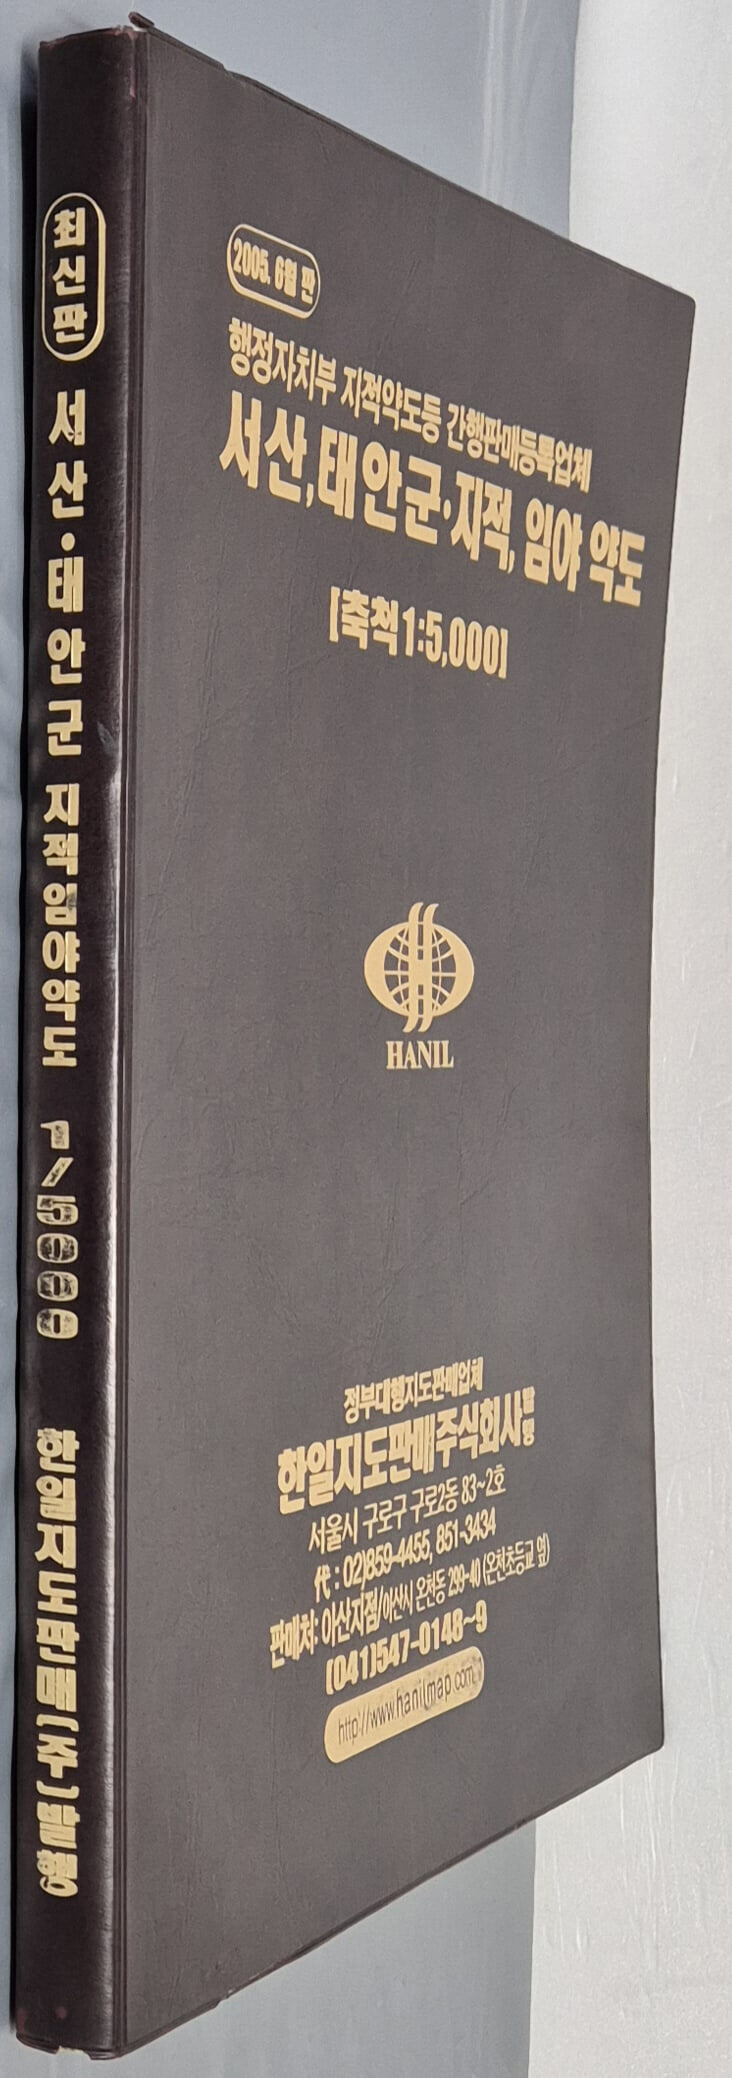 서산 태안군 지적, 임야 약도 (축척:1/5,000) - 2005년 6월 판 한일지도판매